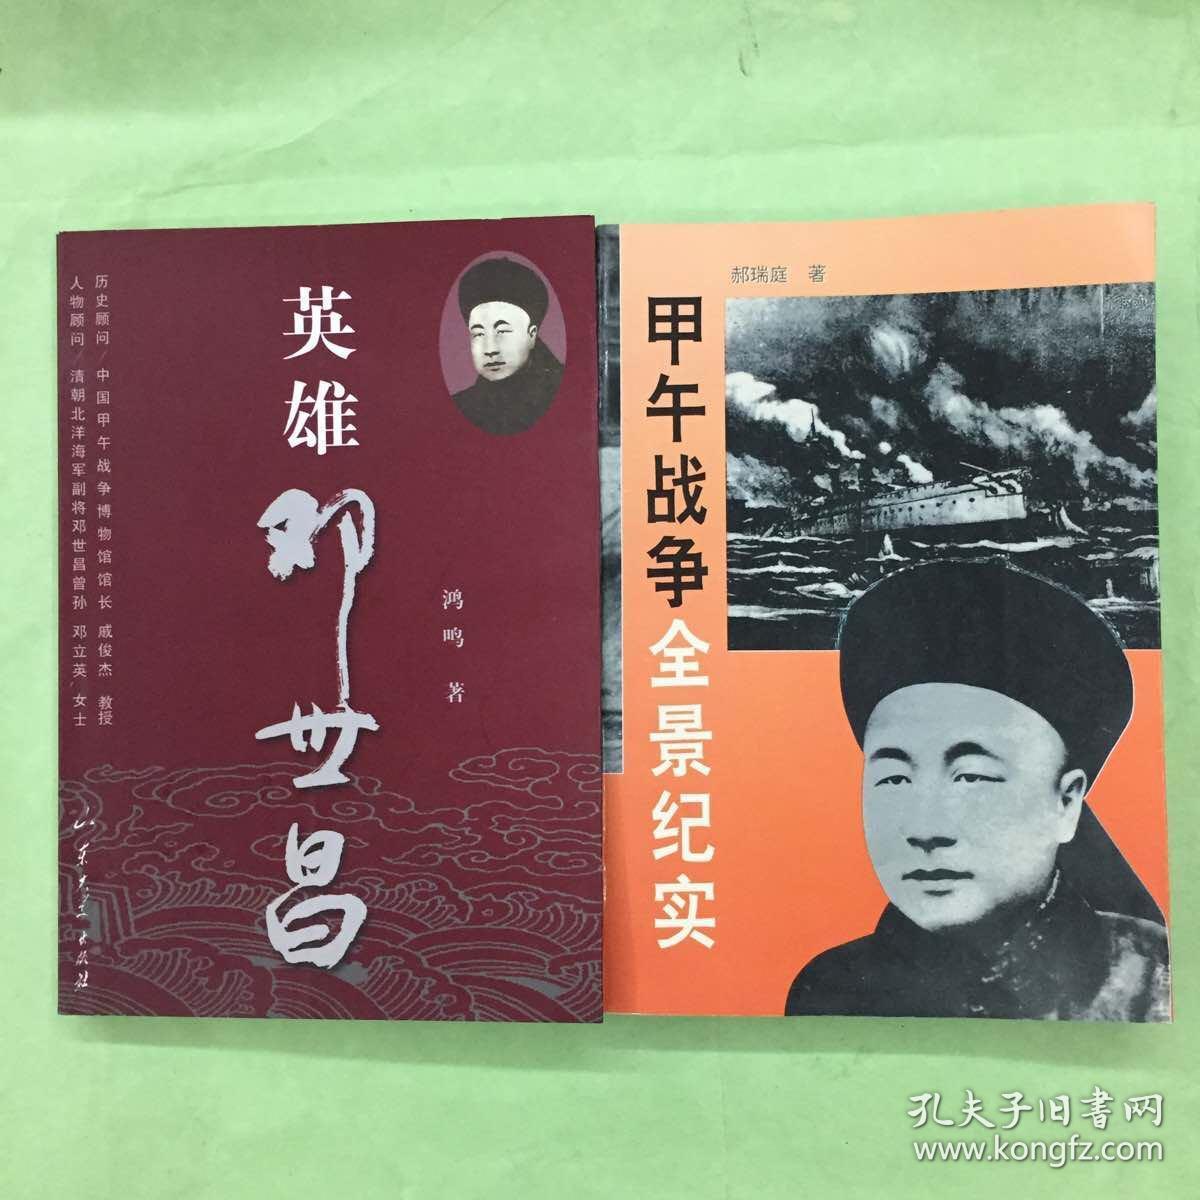 英雄邓世昌(作者钤印签赠本) 甲午战争全景纪实 两本合售 全是一版一印